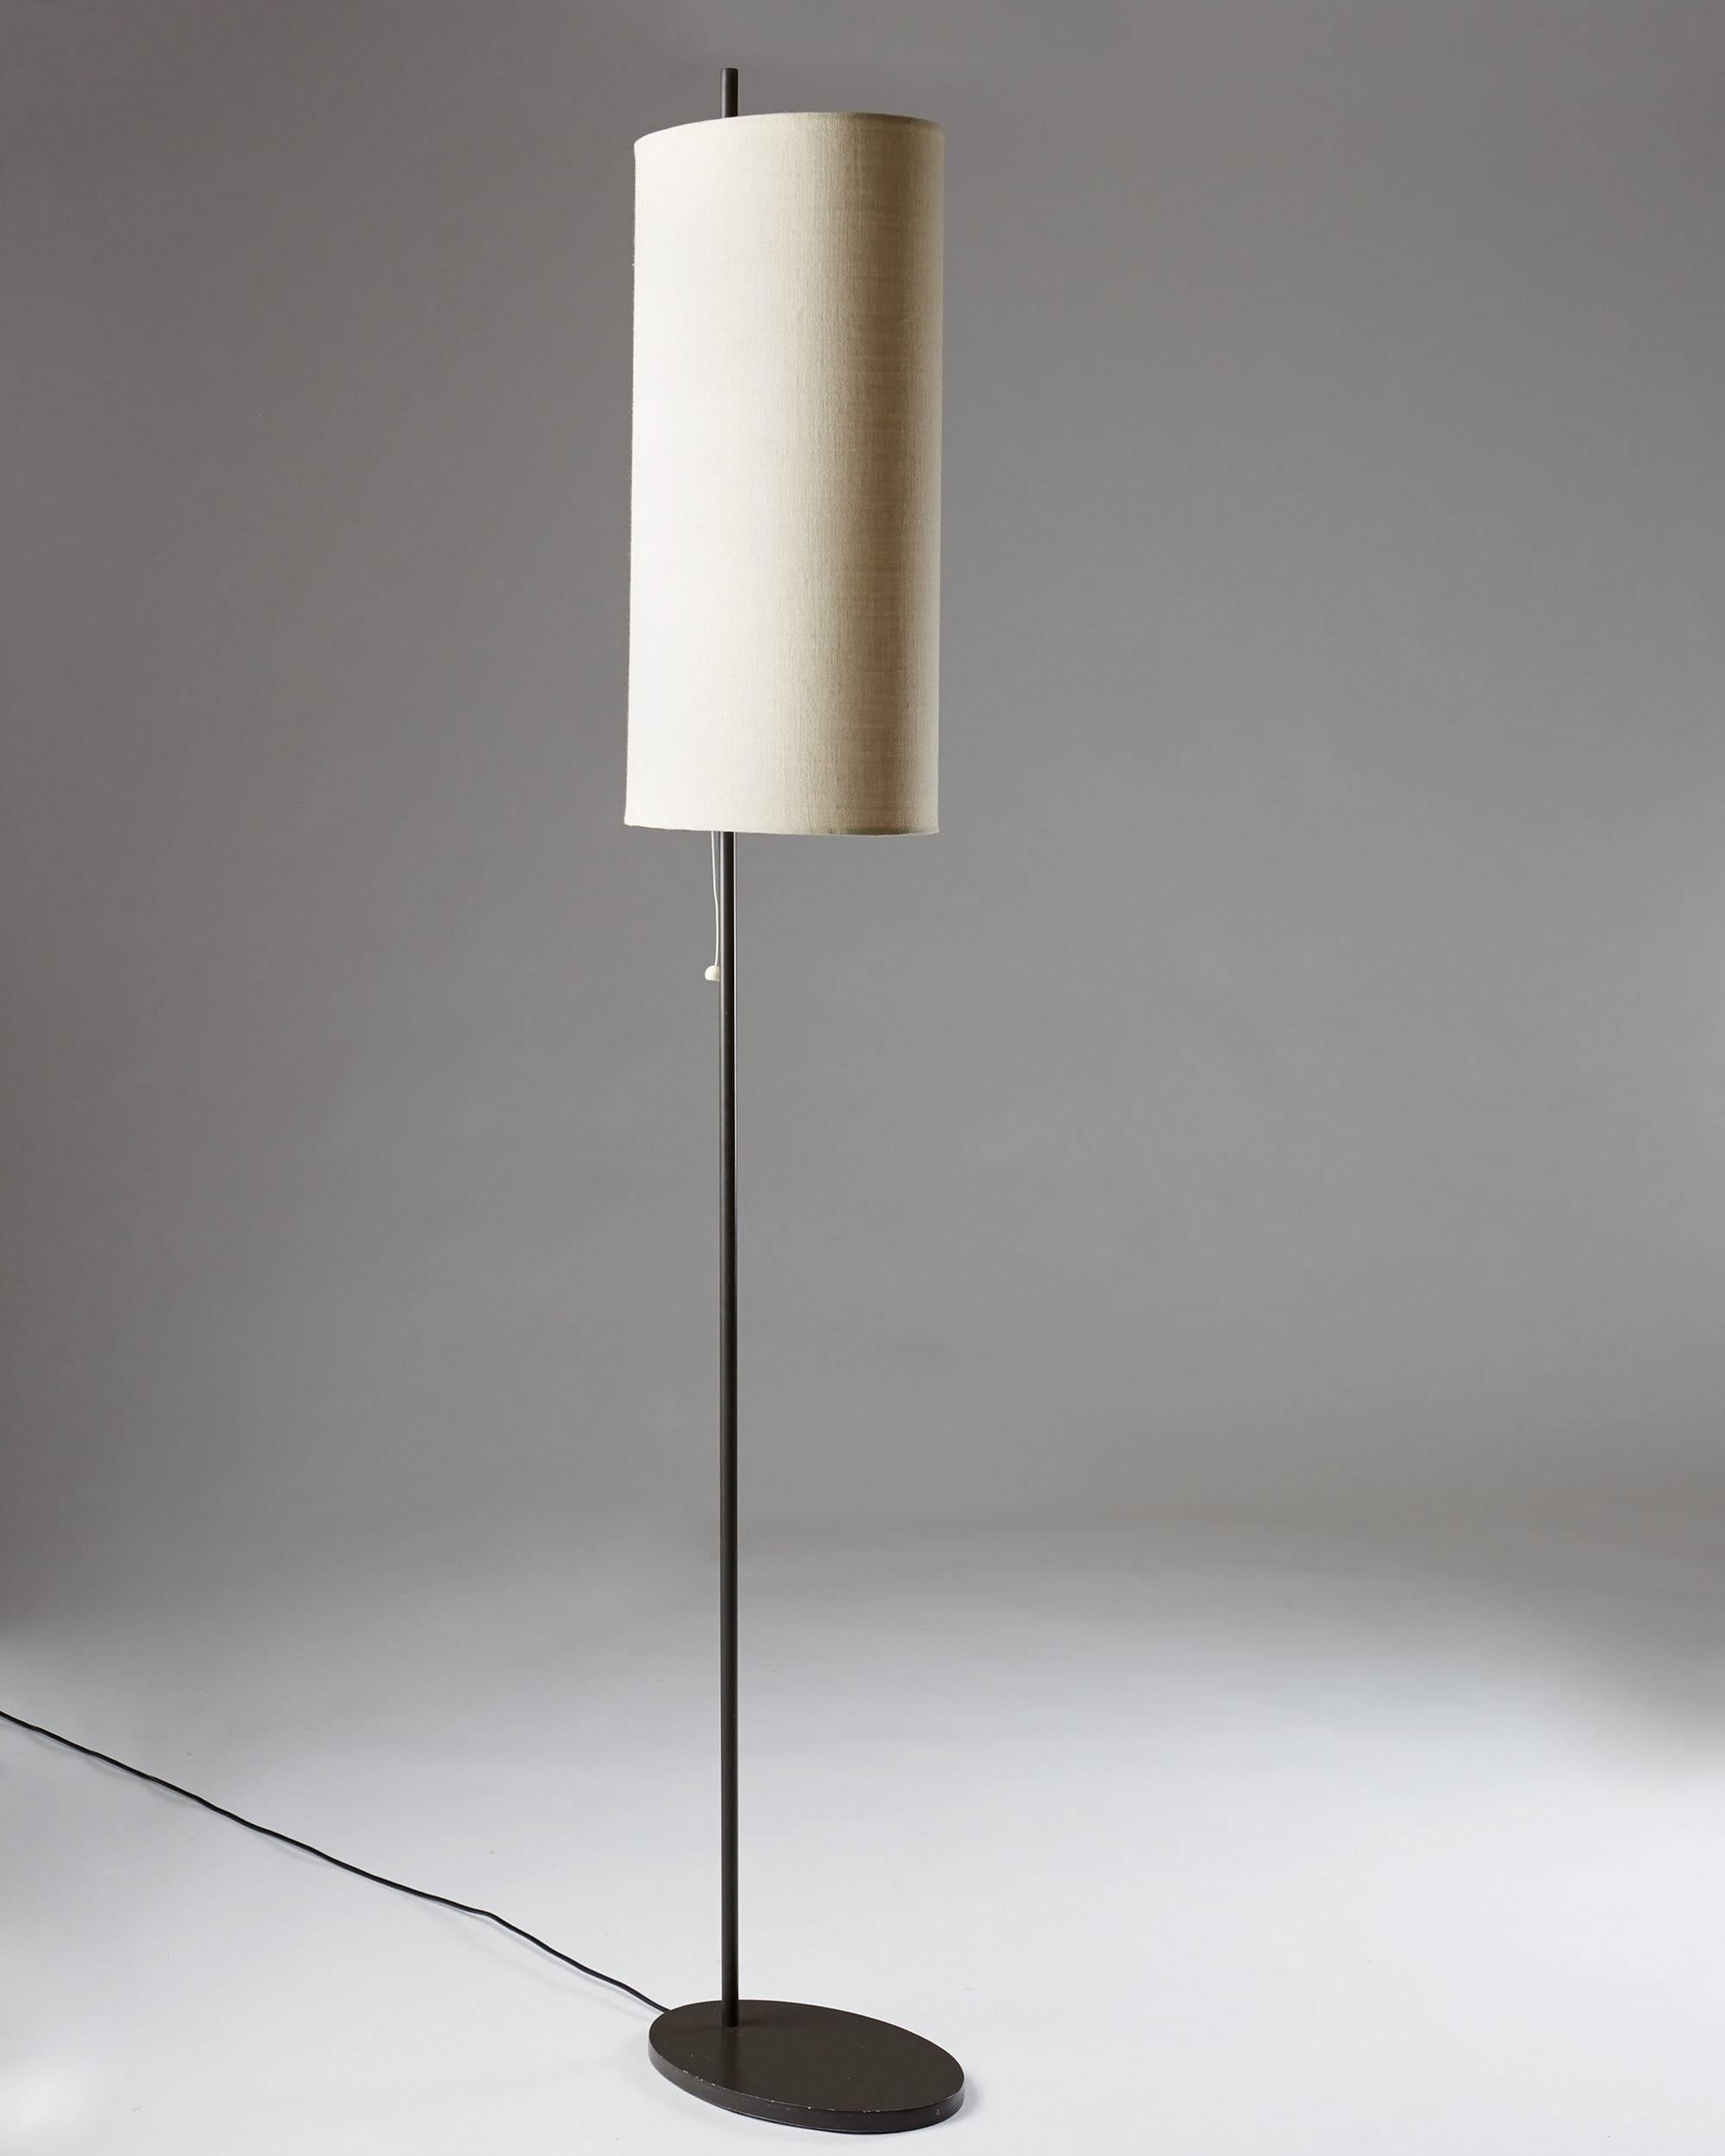 Scandinavian Modern “Royal”, Floor Lamp Designed by Arne Jacobsen for Louis Poulsen, Denmark, 1956